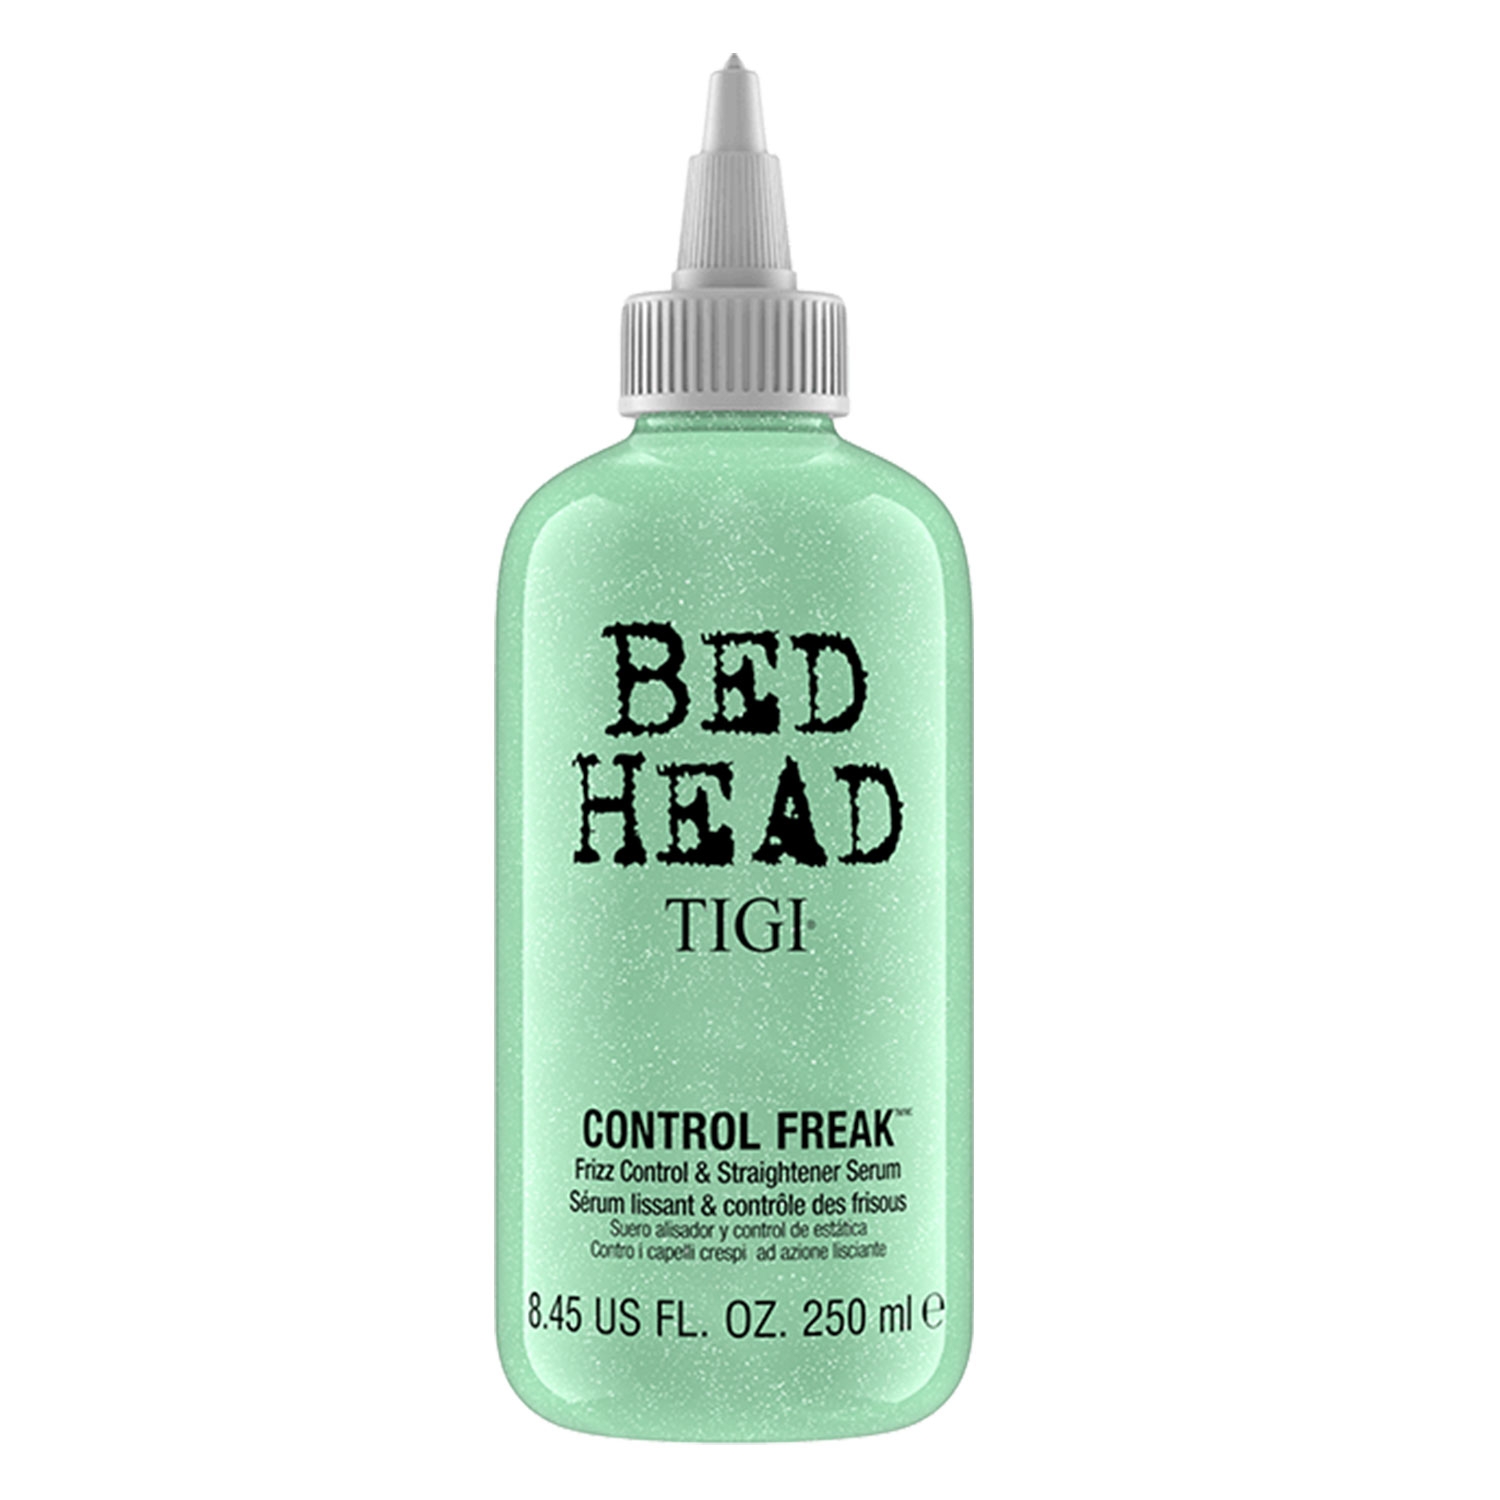 Produktbild von Bed Head - Control Freak Serum